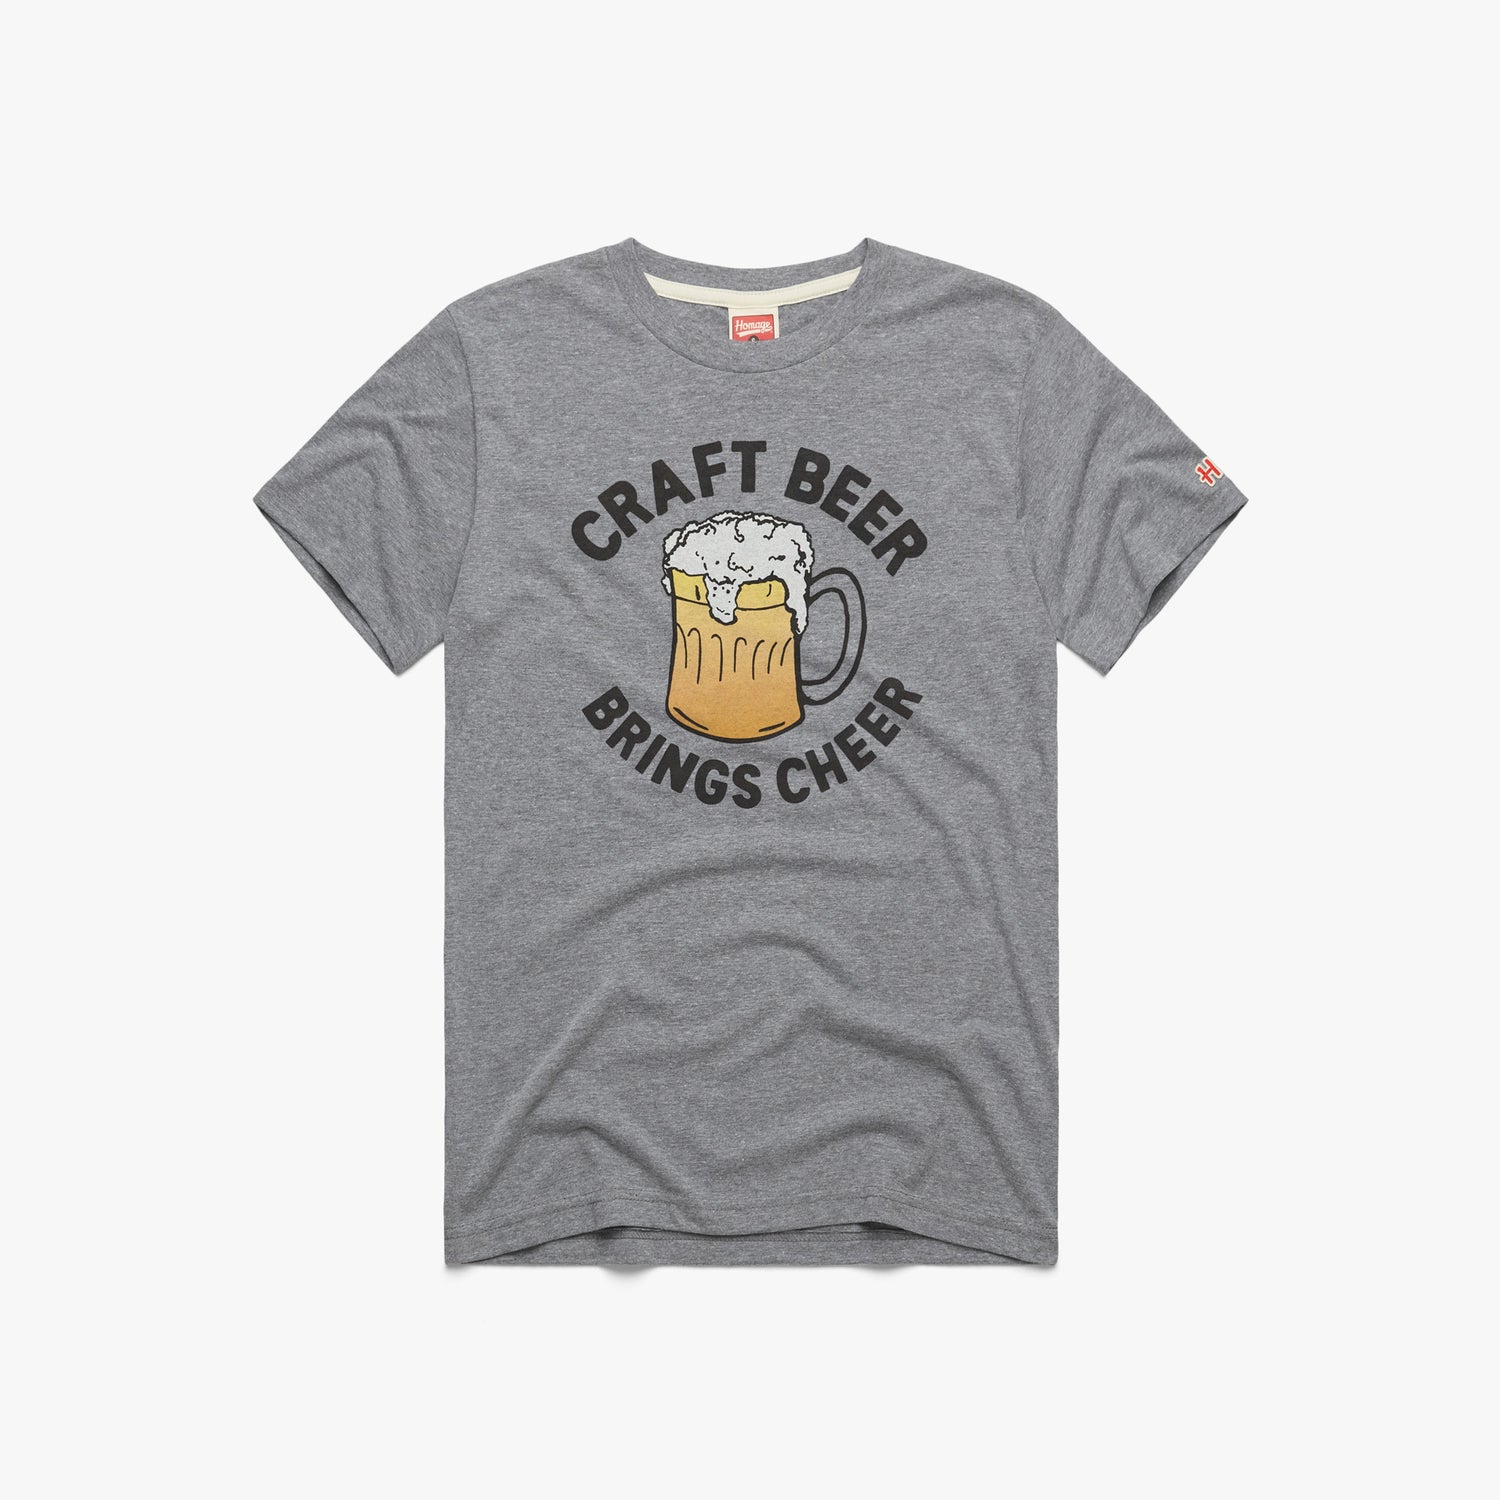 Craft Beer Brings Cheer